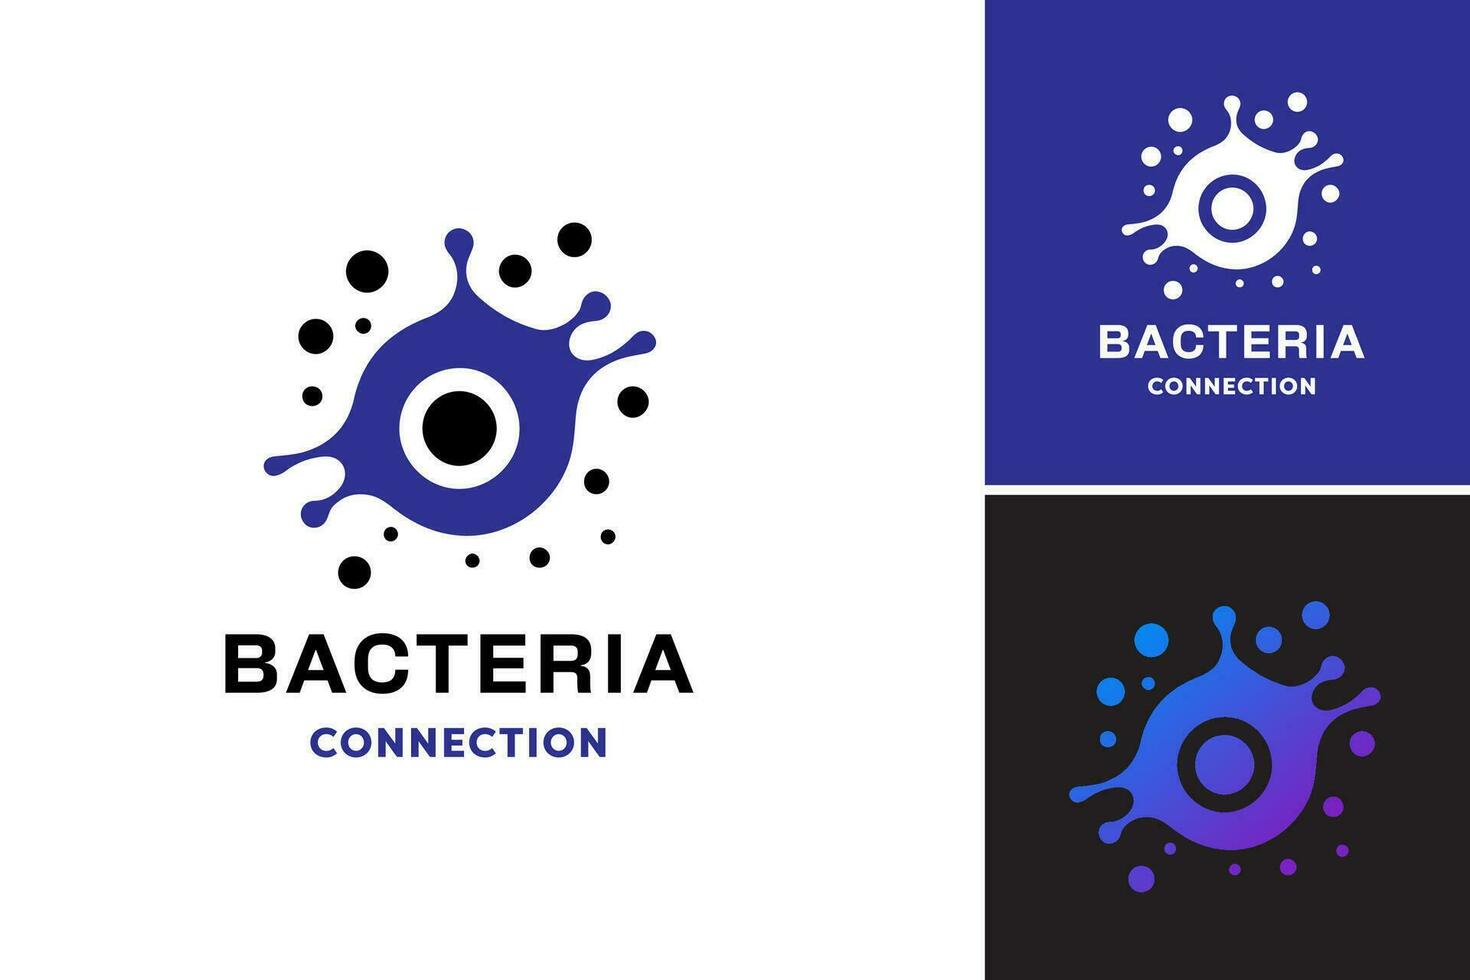 bacterias conexión logo representa un diseño activo presentando un logo ese incorpora bacterias imágenes. esta activo es adecuado para negocios o organizaciones relacionado a biotecnología, microbiología, vector